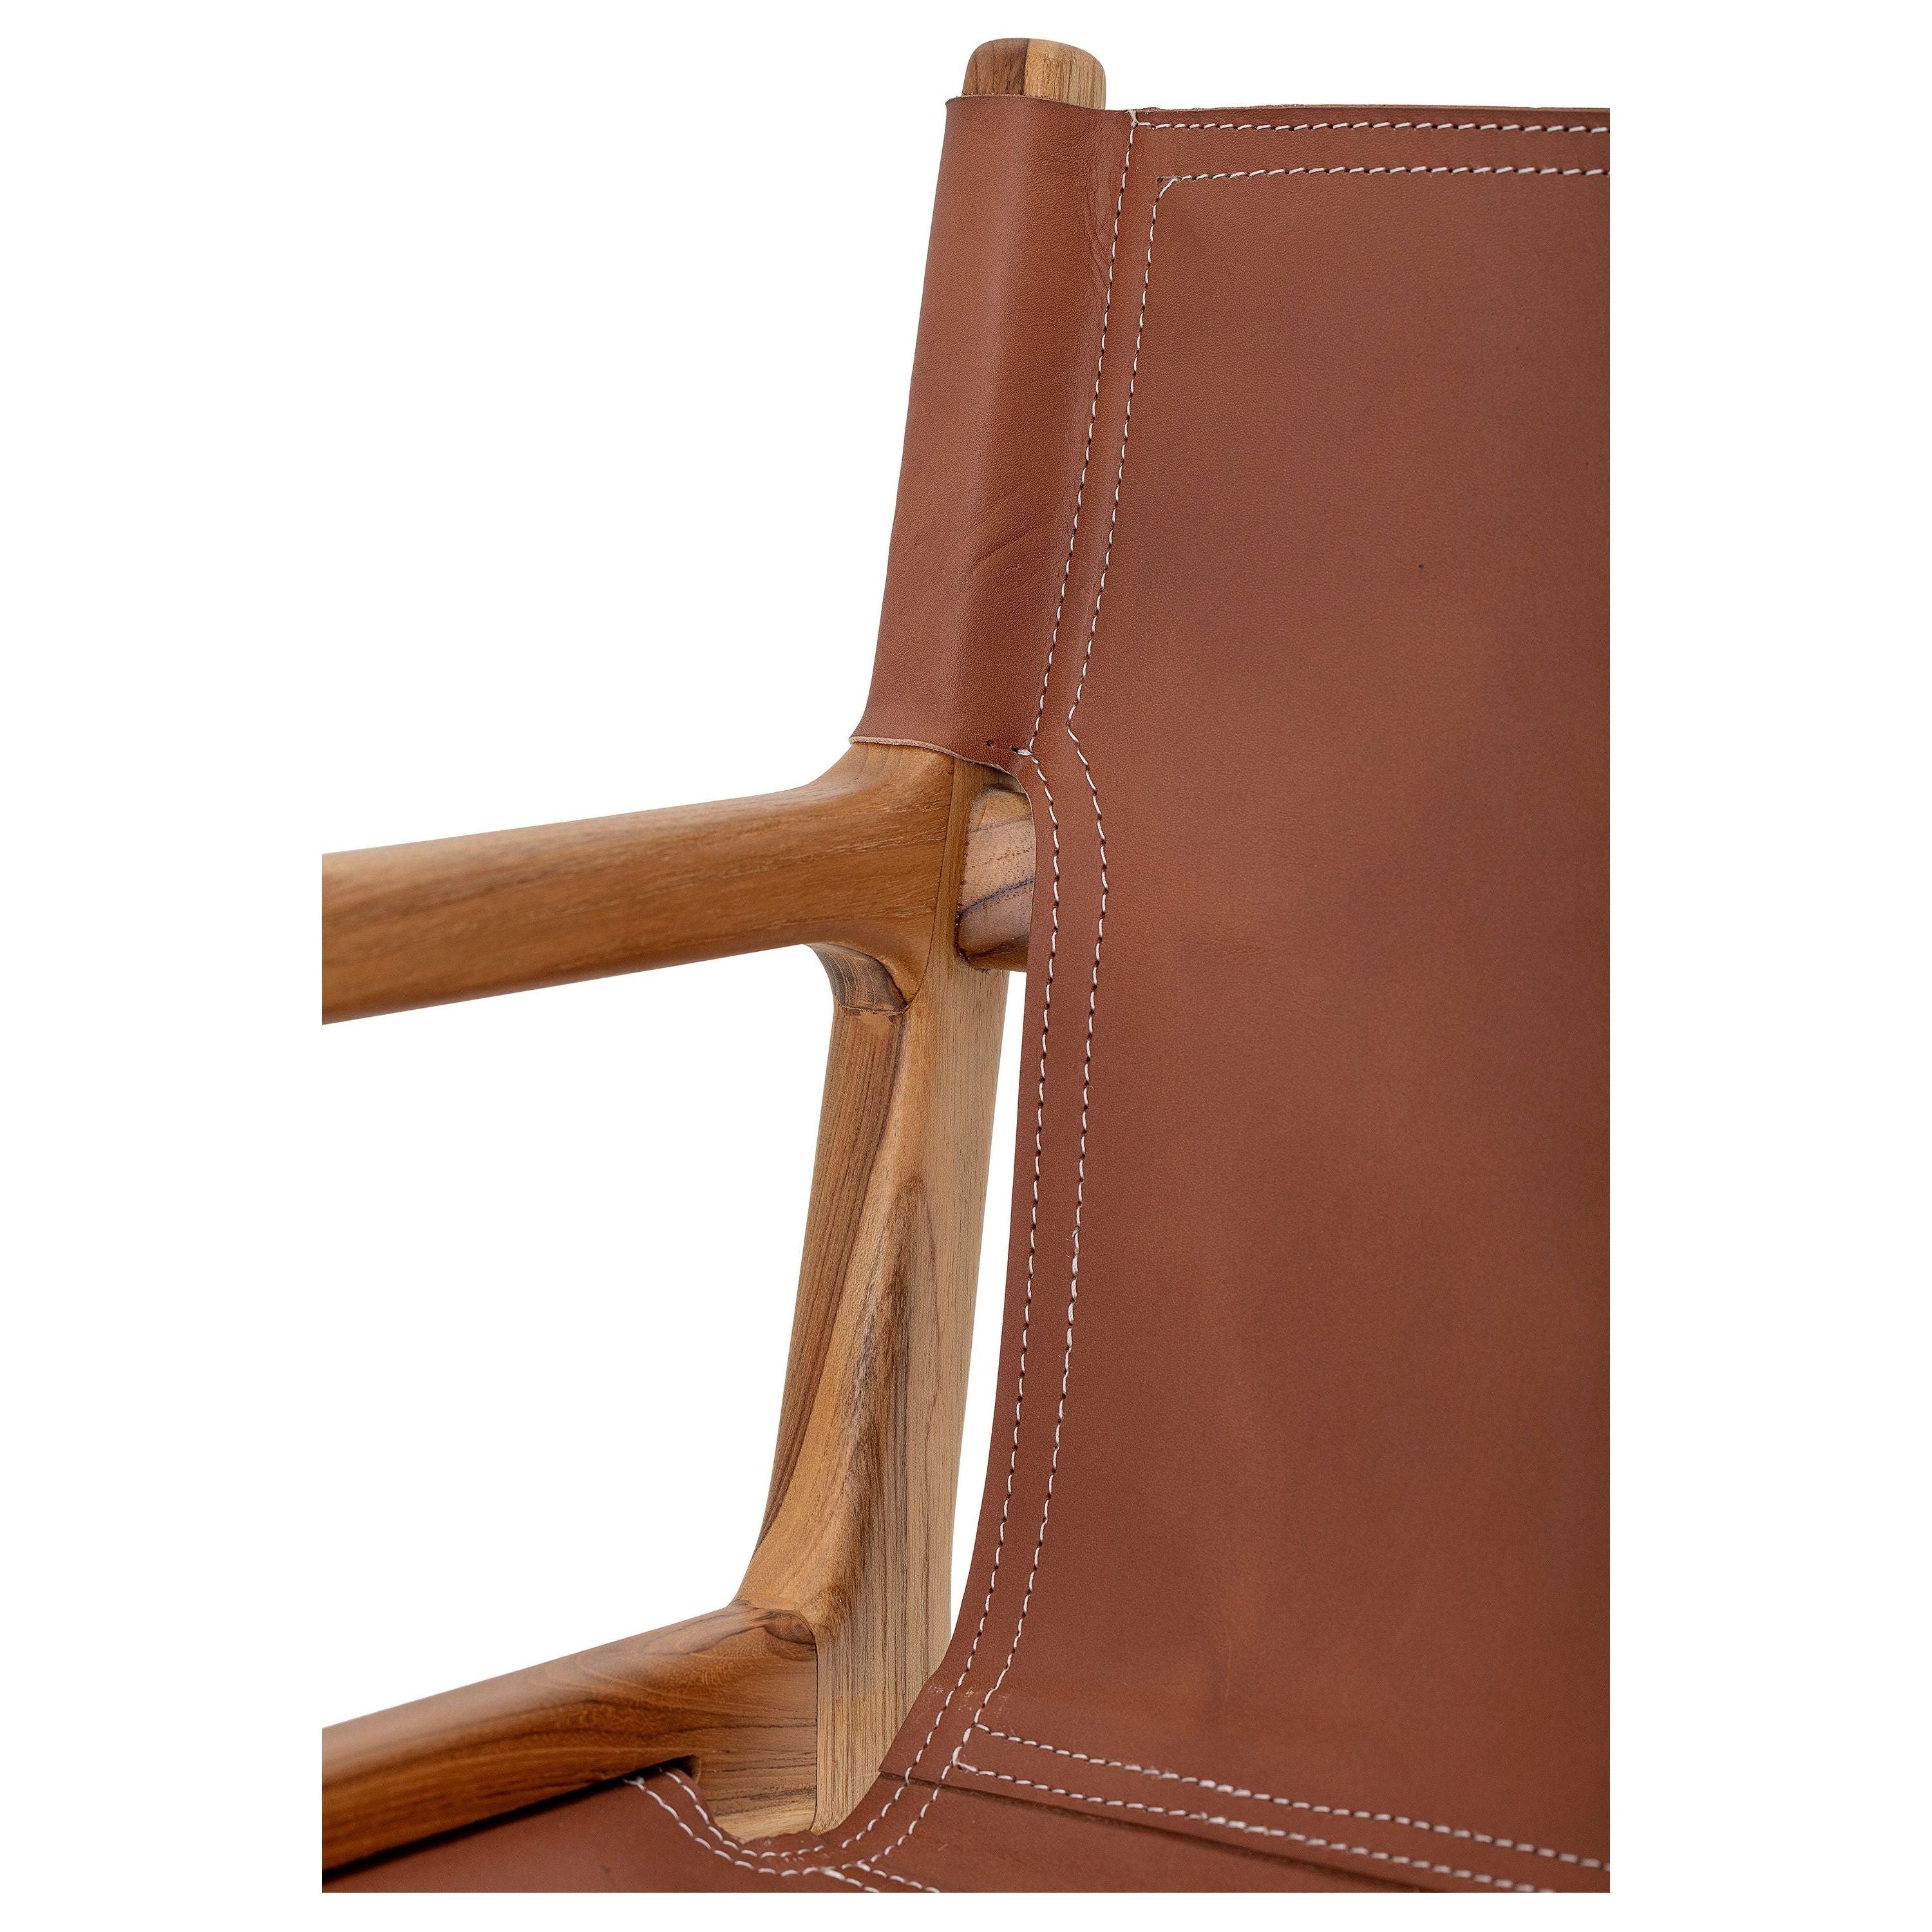 'Ollie' poilsio kėdė, ruda, odinė